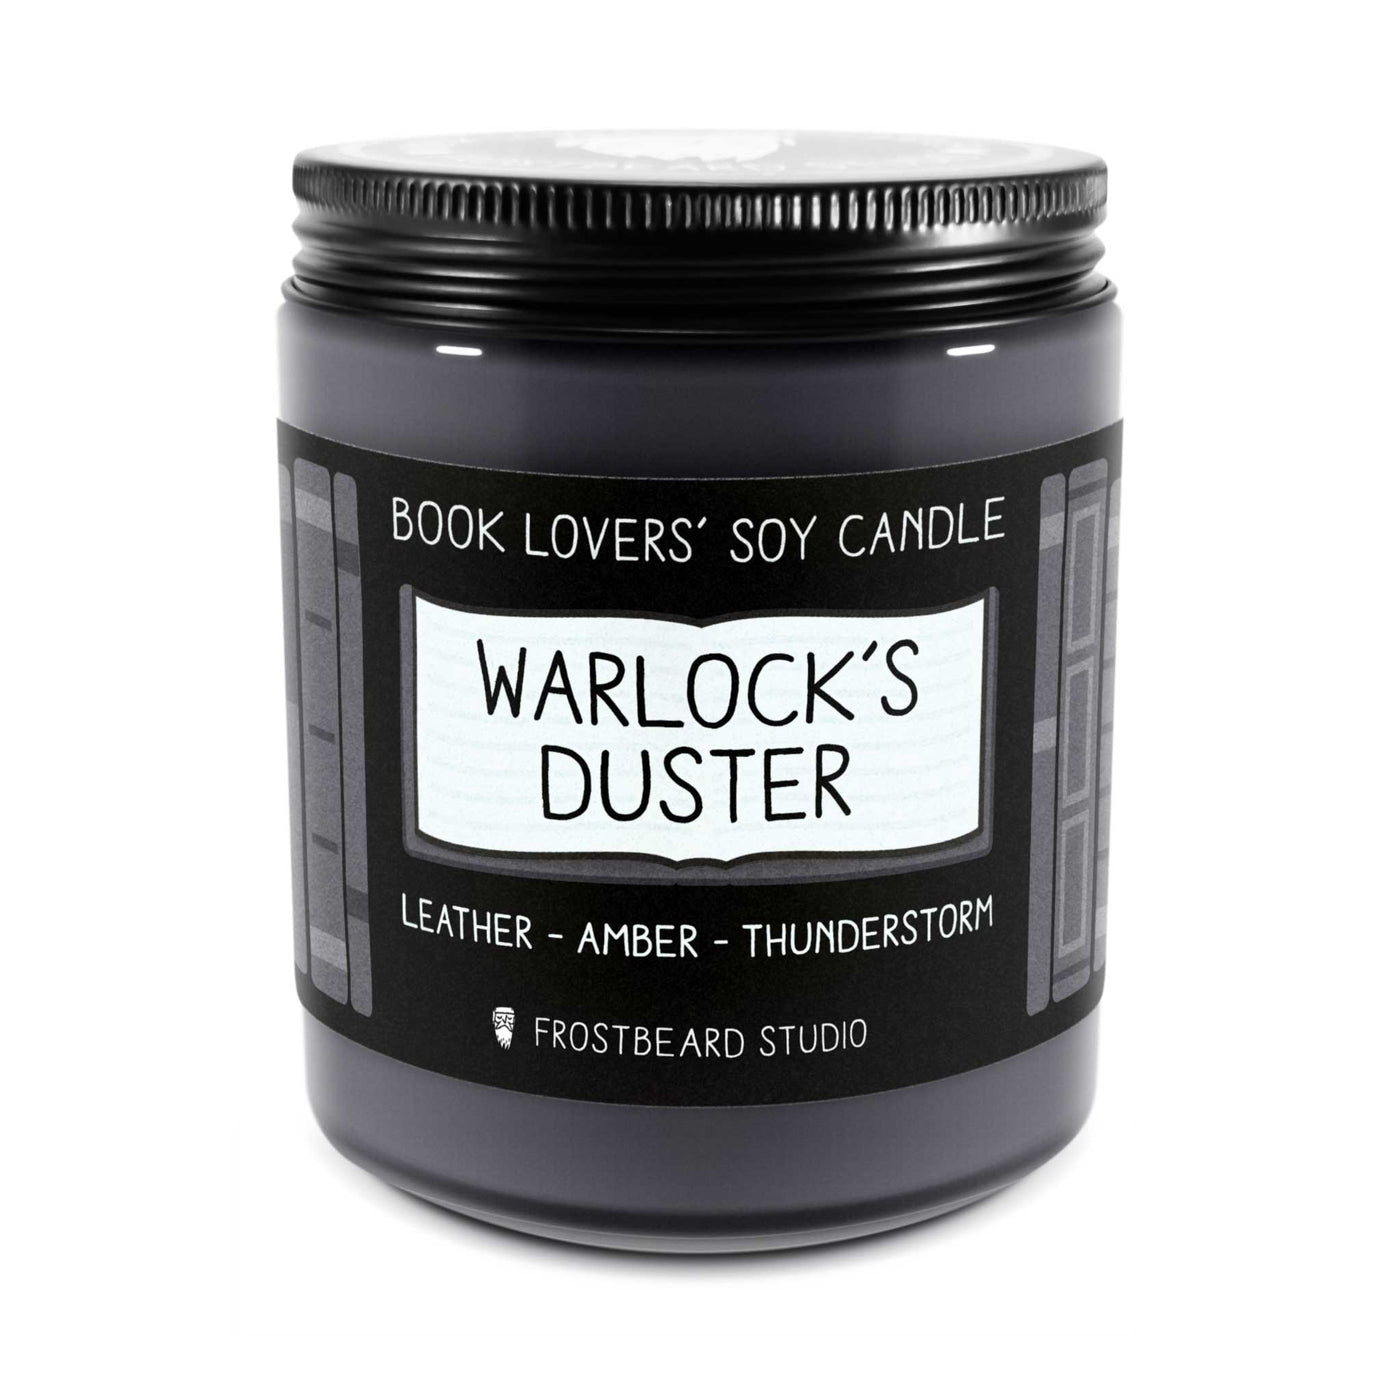 Warlock's Duster  -  8 oz Jar  -  Book Lovers' Soy Candle  -  Frostbeard Studio